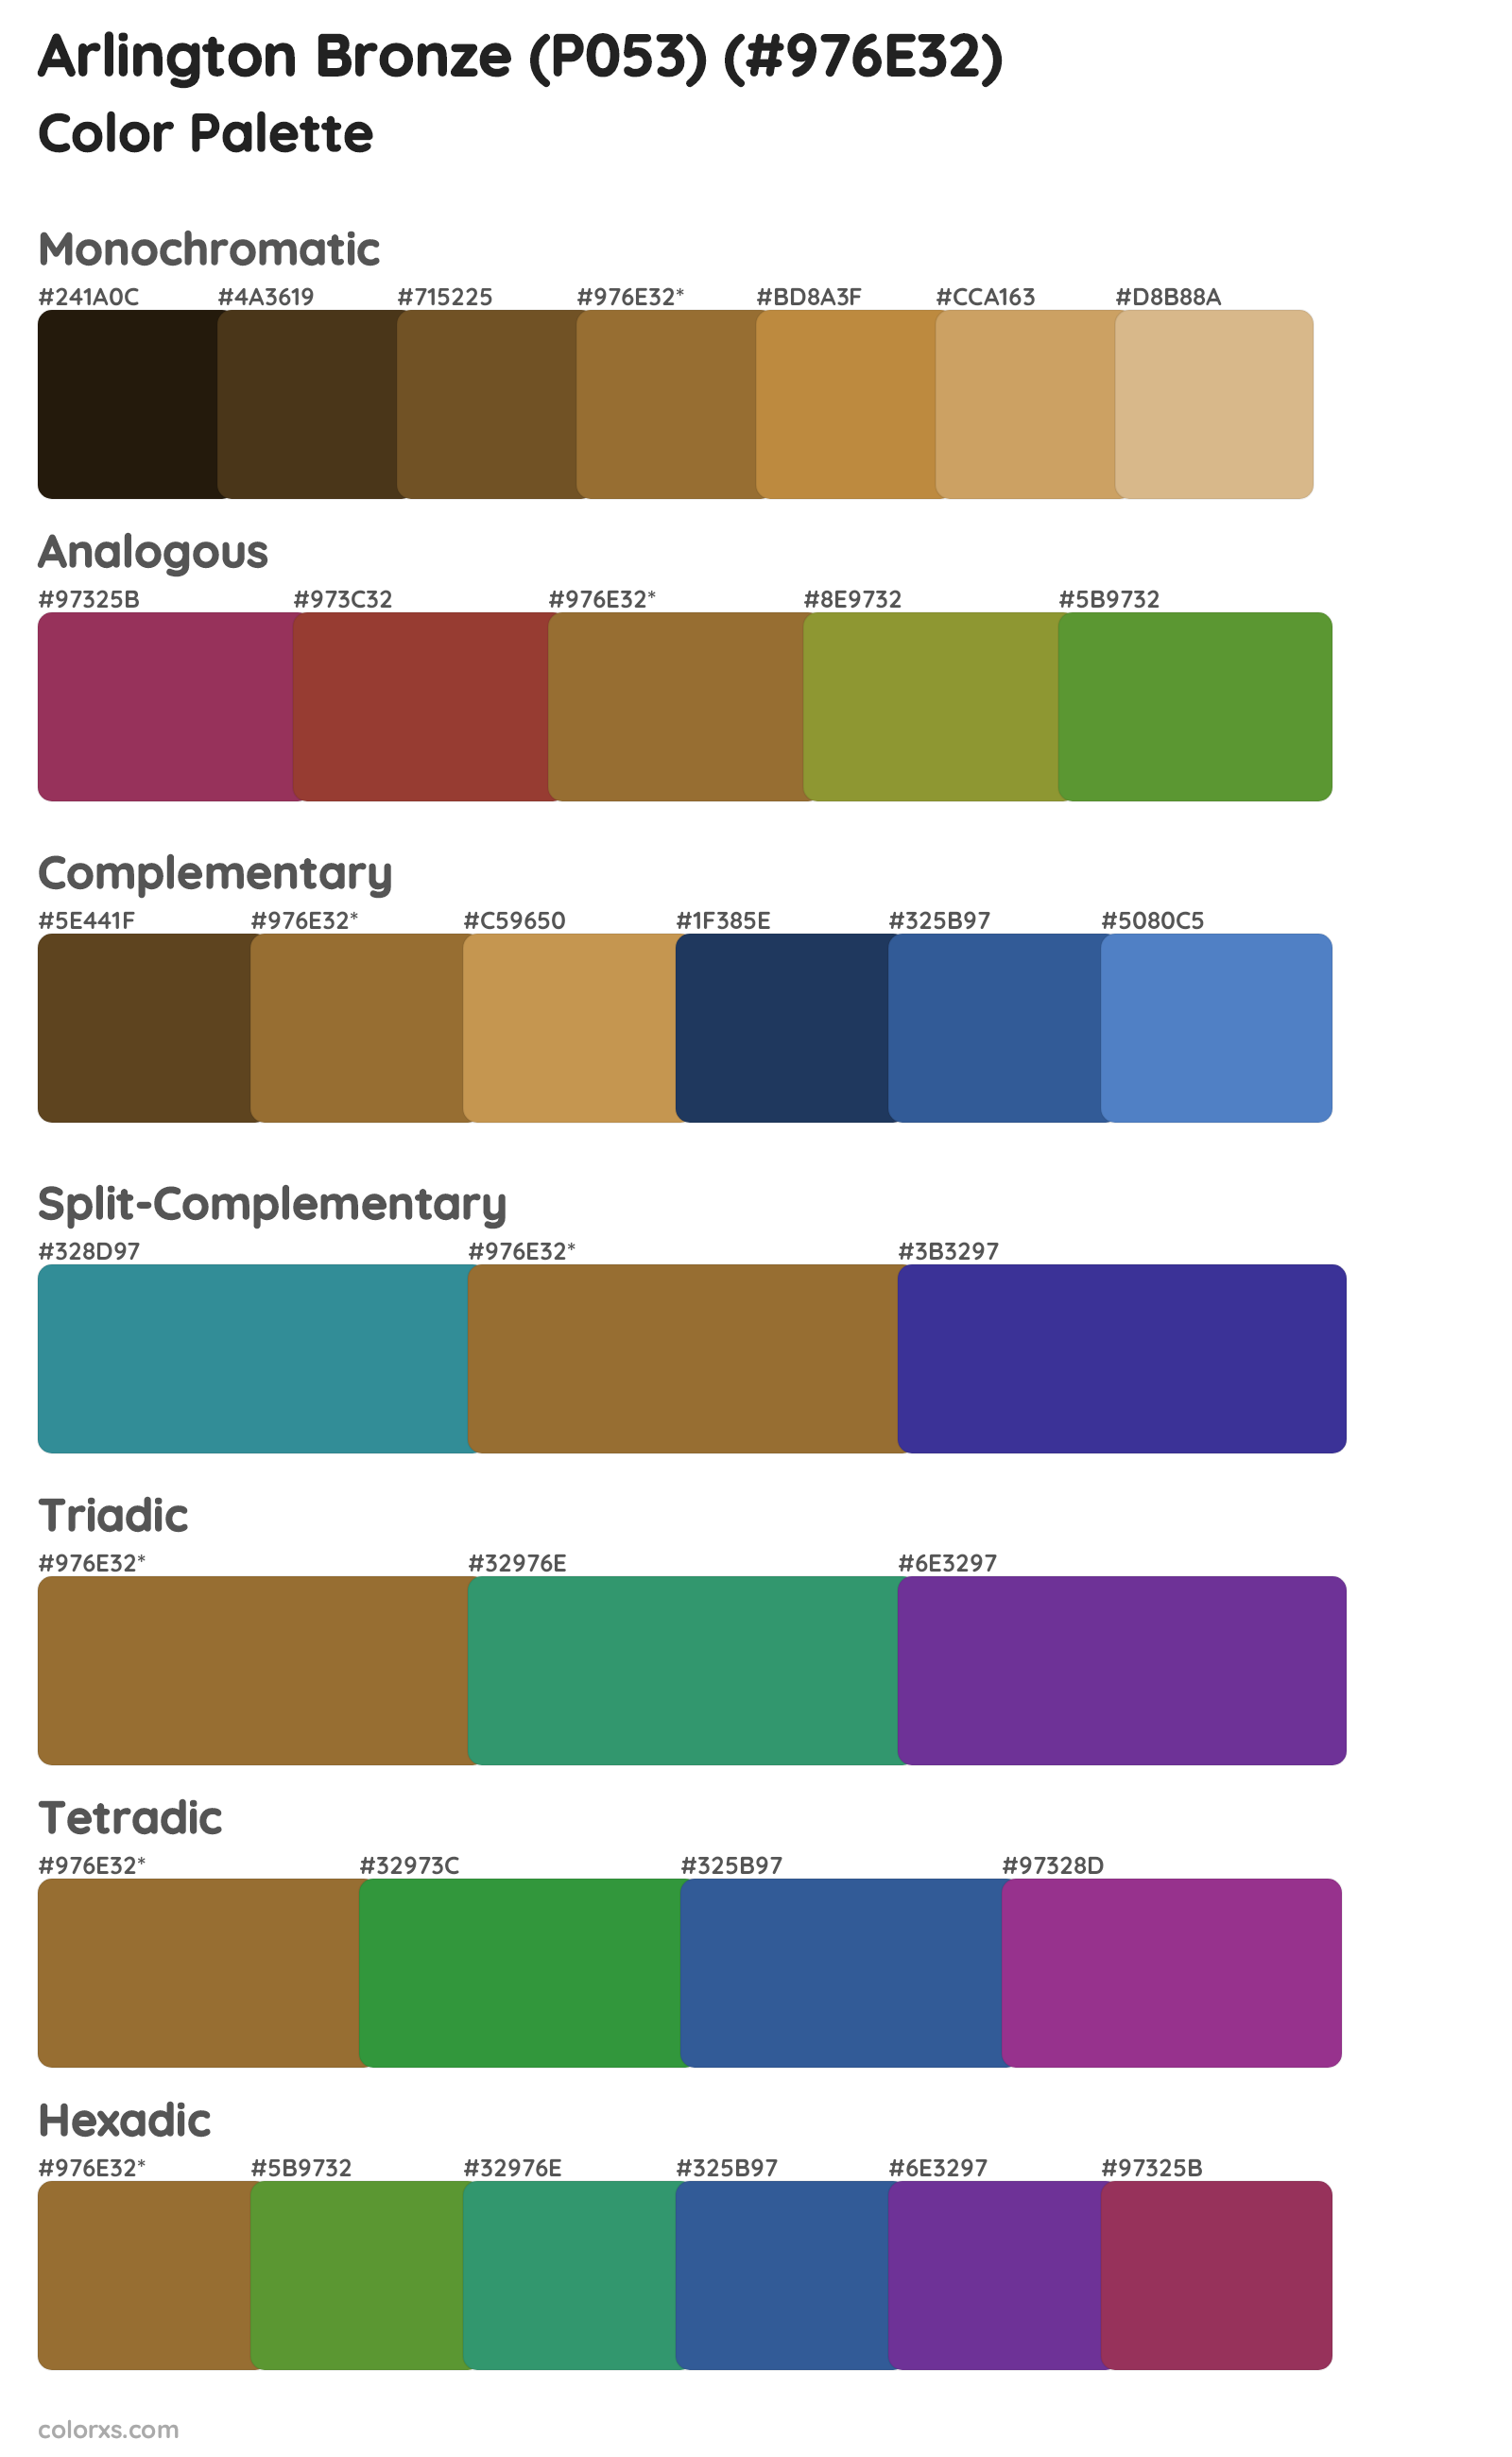 Arlington Bronze (P053) Color Scheme Palettes